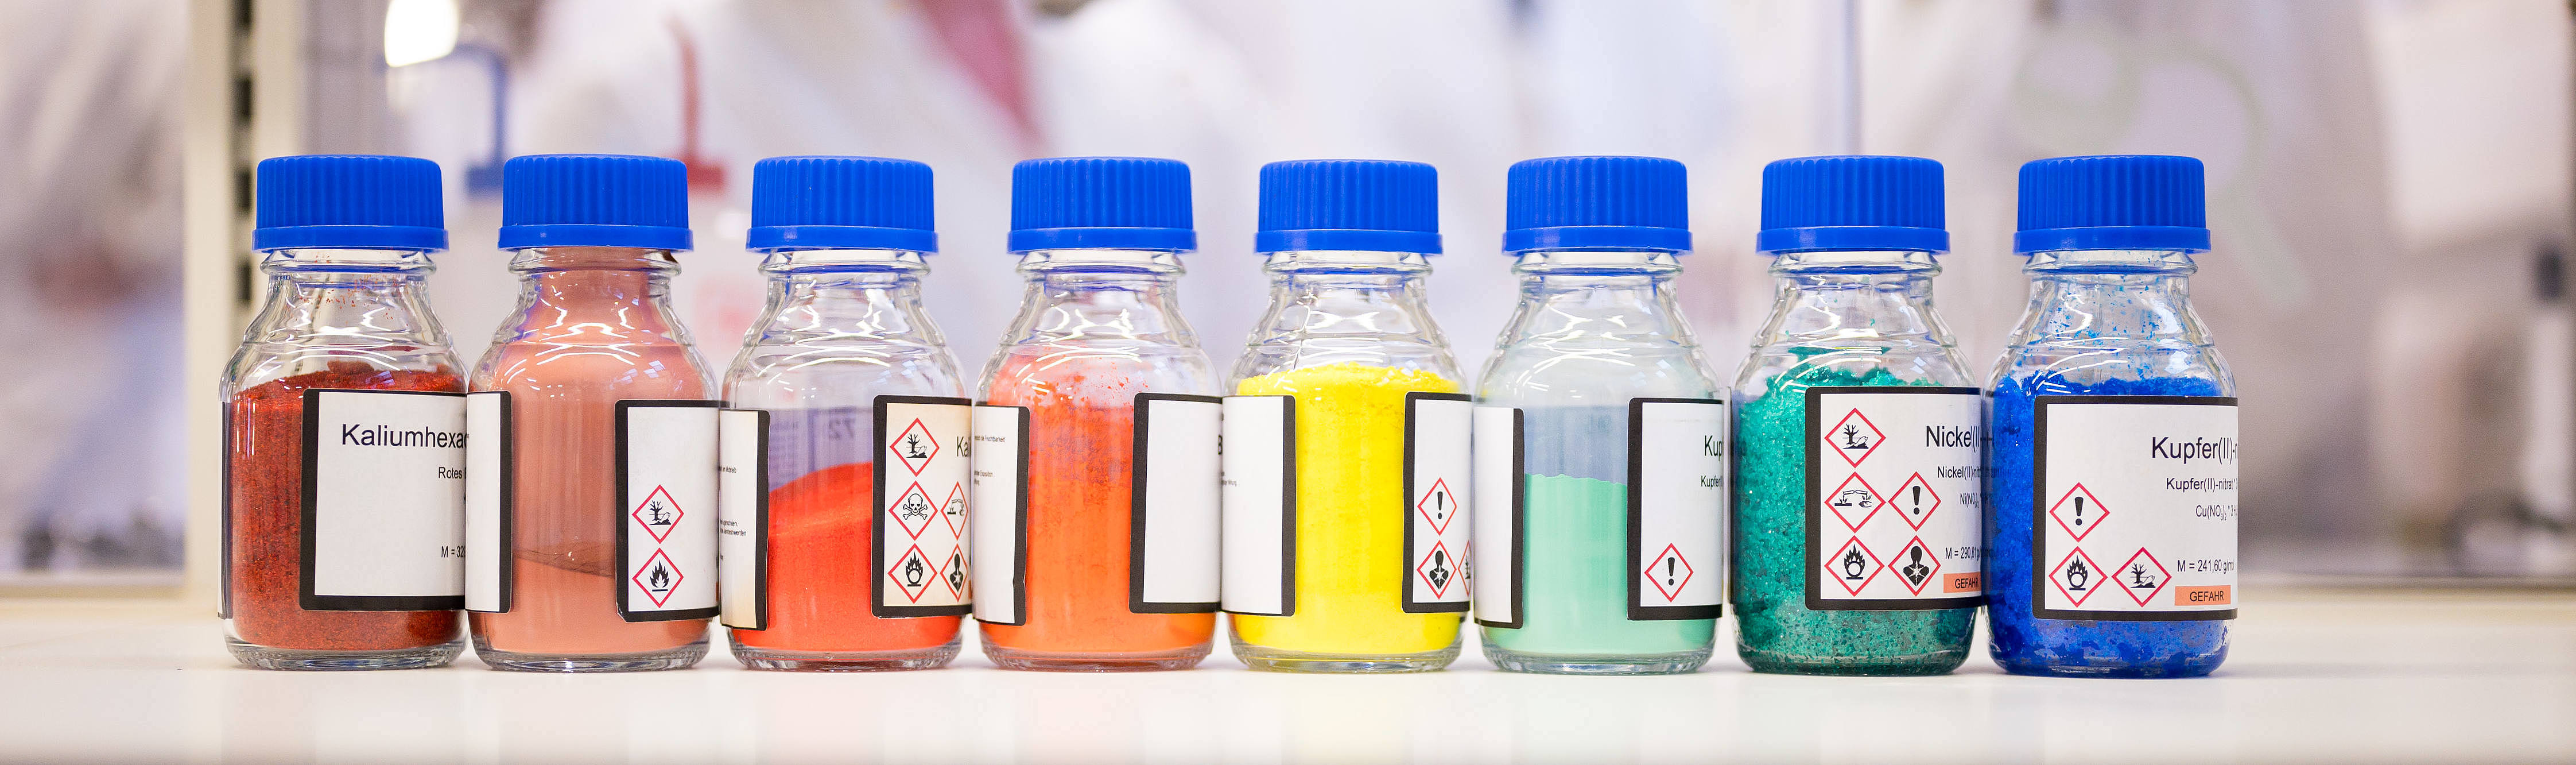 auf einer Bench (Arbeitsplatz im Labor) stehen 8 Flaschen mit blauem Deckel. In den Flaschen sind bunte Feststoff: rot, dunkelrot, 2 mal organge, gelb, türkis, grün und blau